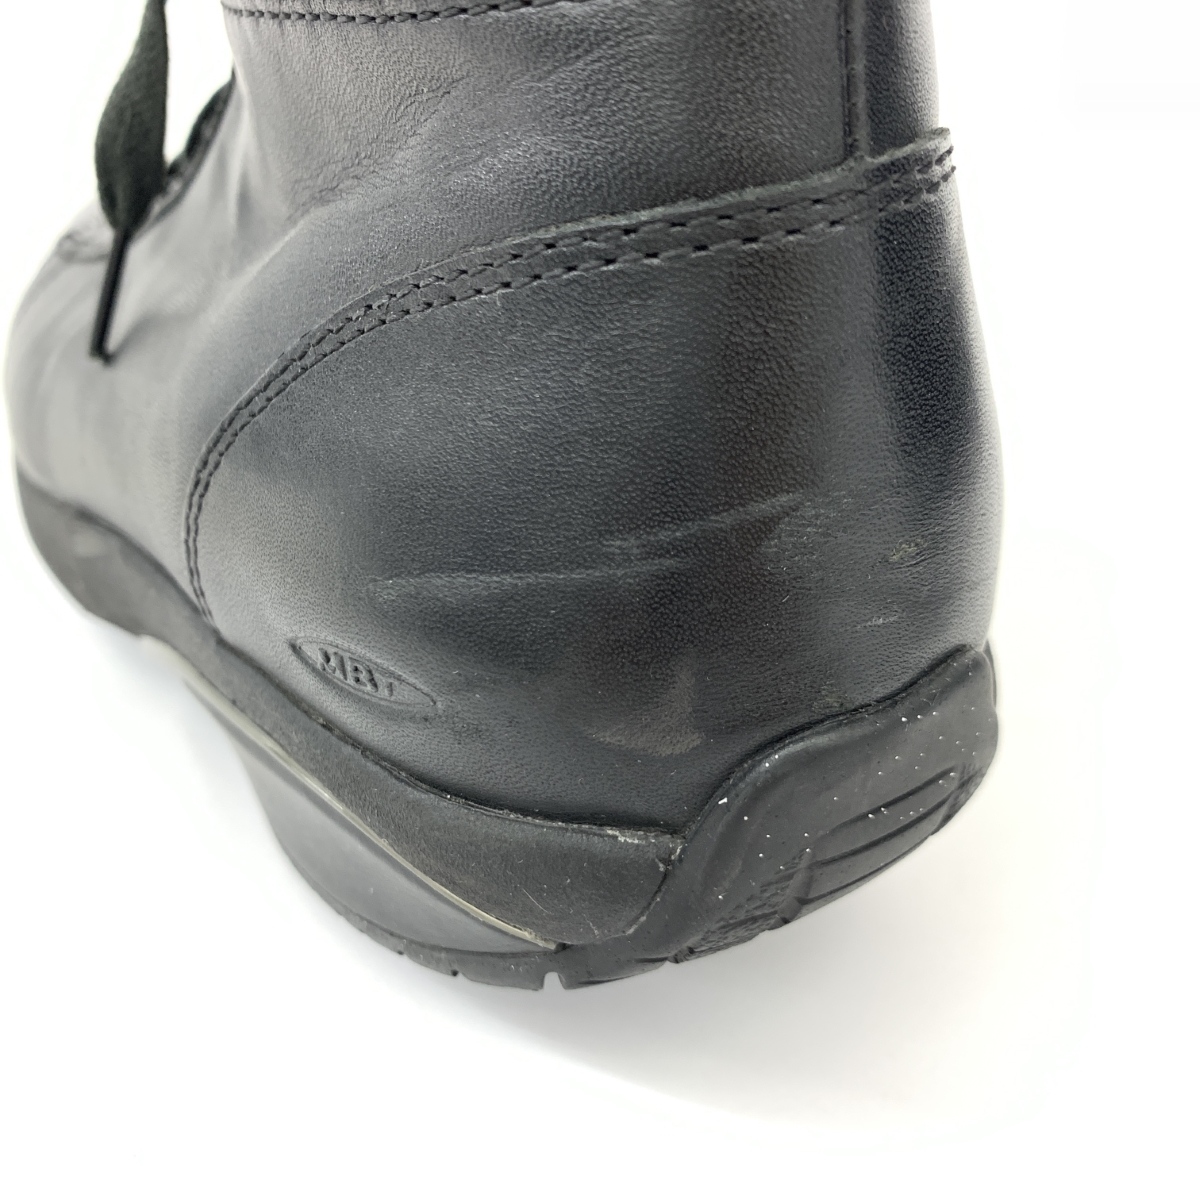 ◆MBT マサイベアフットテクノロジー ブーツ 40◆ ブラック/ネイビー レザー×ニット ビブラムソール メンズ 靴 シューズ shoes_画像10